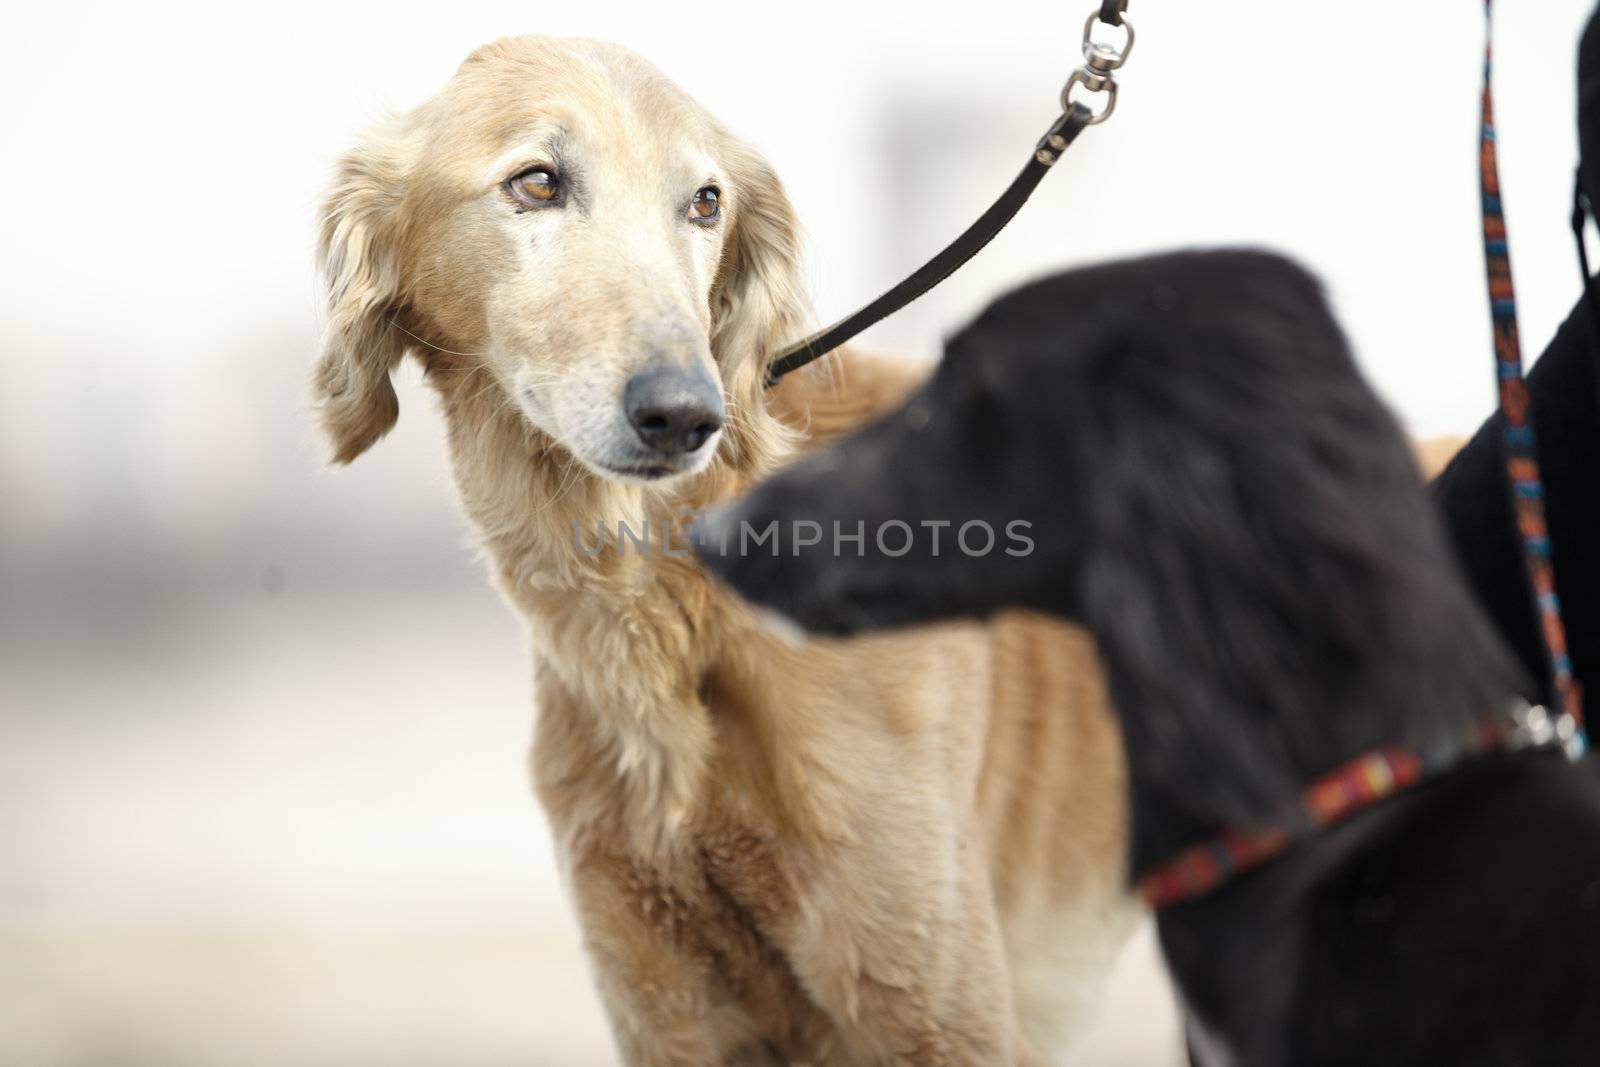 Two Turkmenian greyhound dogs by Novic